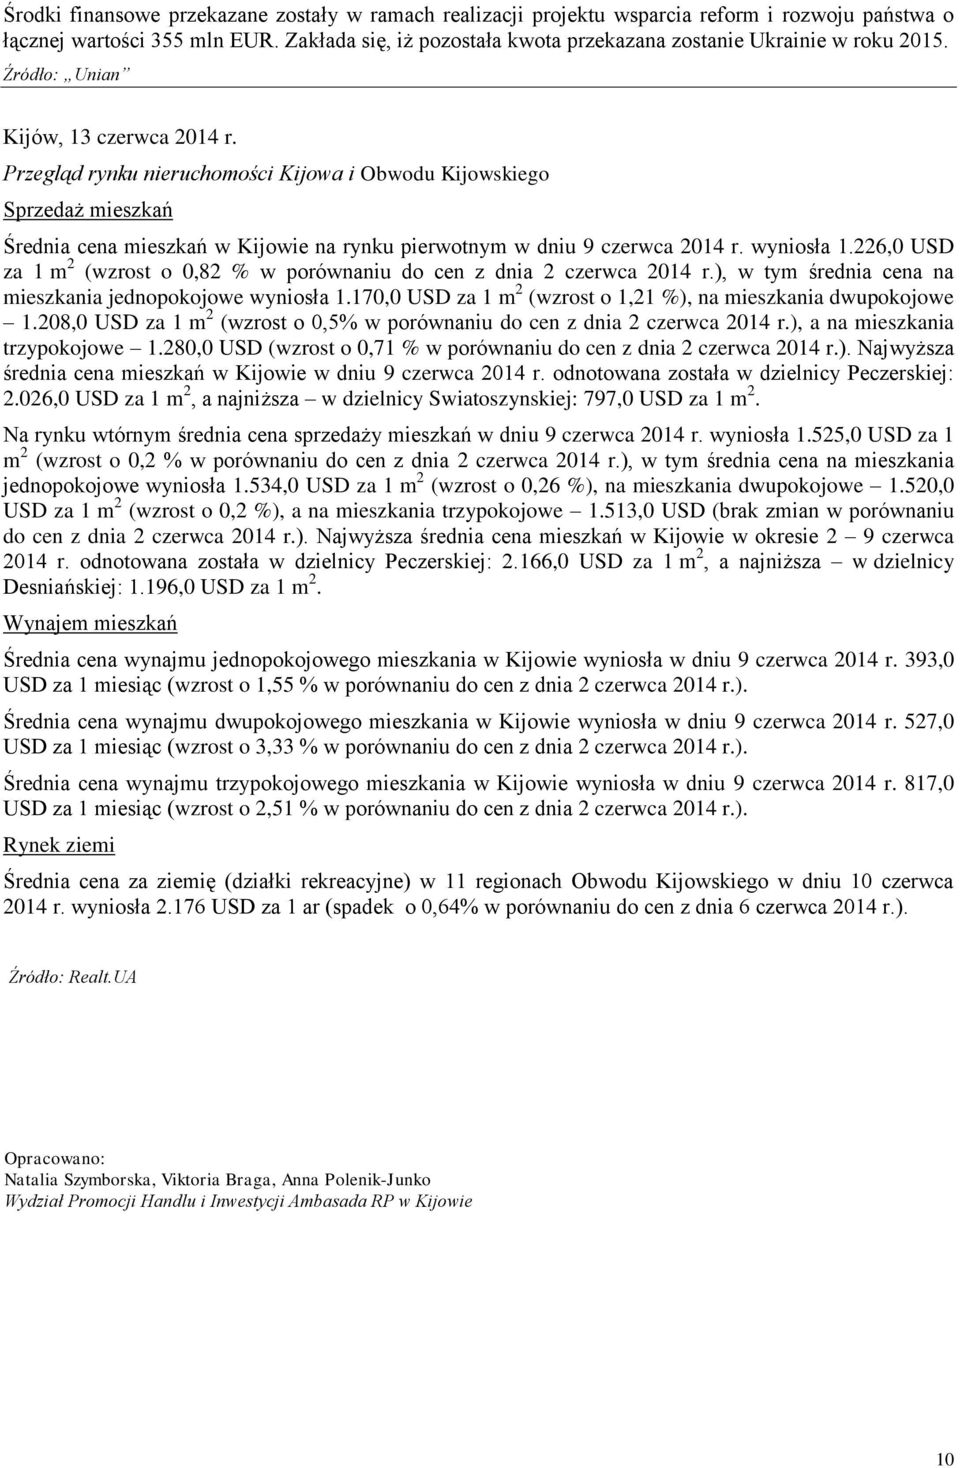 Przegląd rynku nieruchomości Kijowa i Obwodu Kijowskiego Sprzedaż mieszkań Średnia cena mieszkań w Kijowie na rynku pierwotnym w dniu 9 czerwca 2014 r. wyniosła 1.